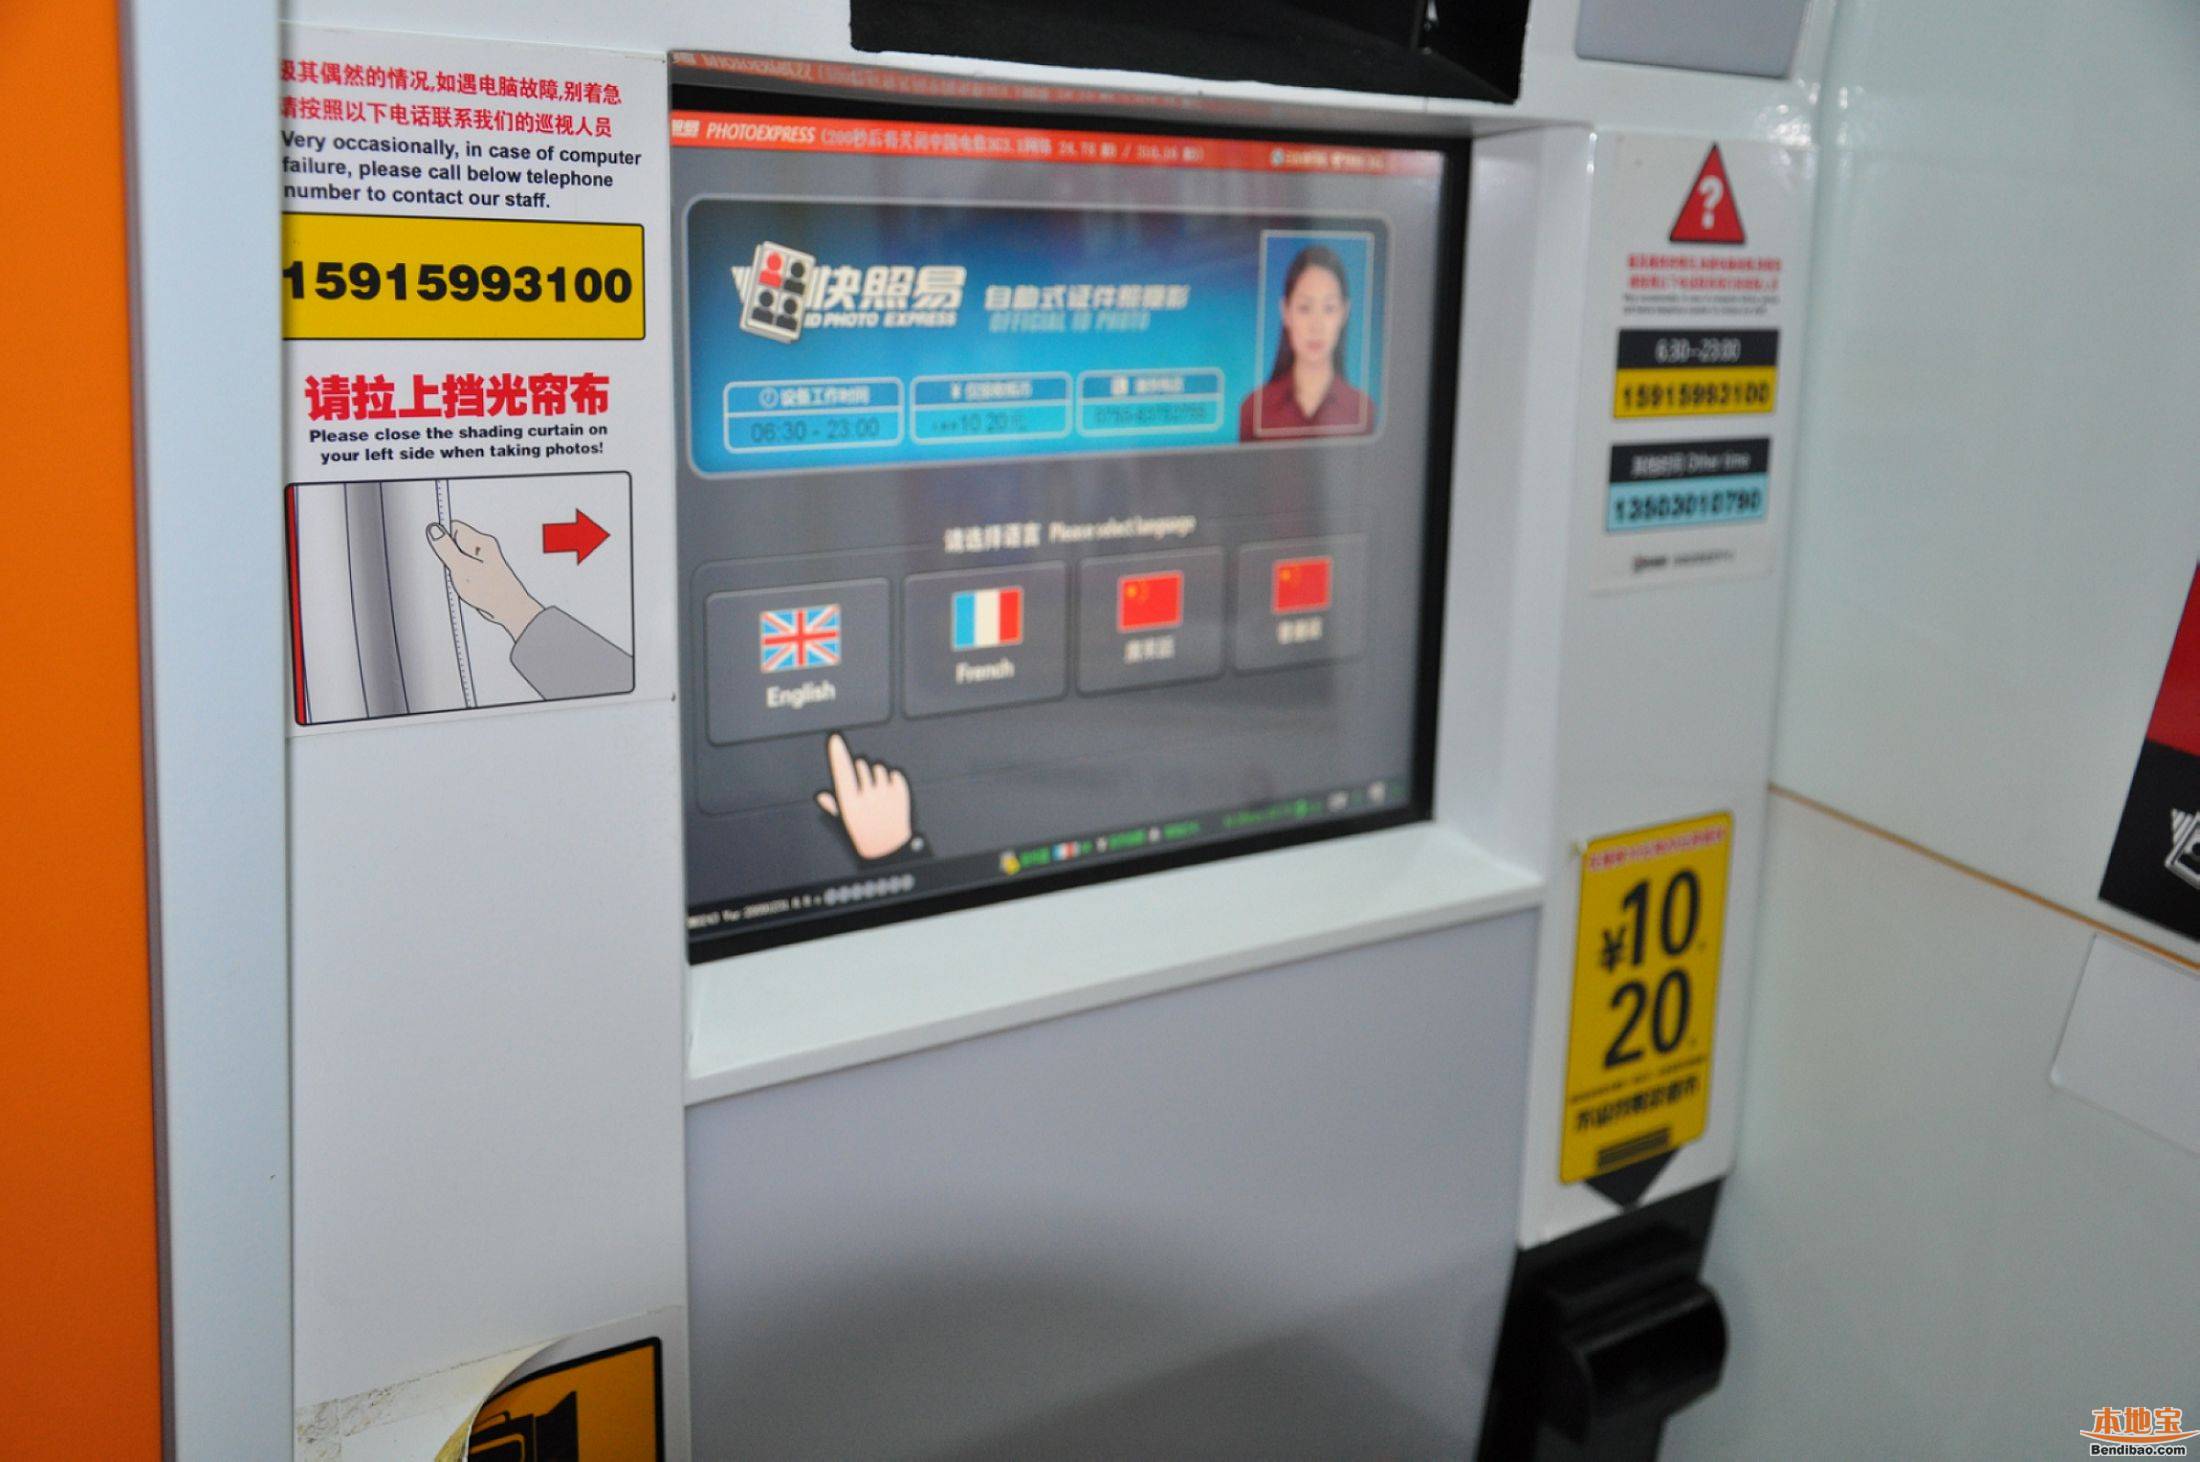 广州的地铁 证件照自助机能拍身份证的照片吗（广州地铁证件照）